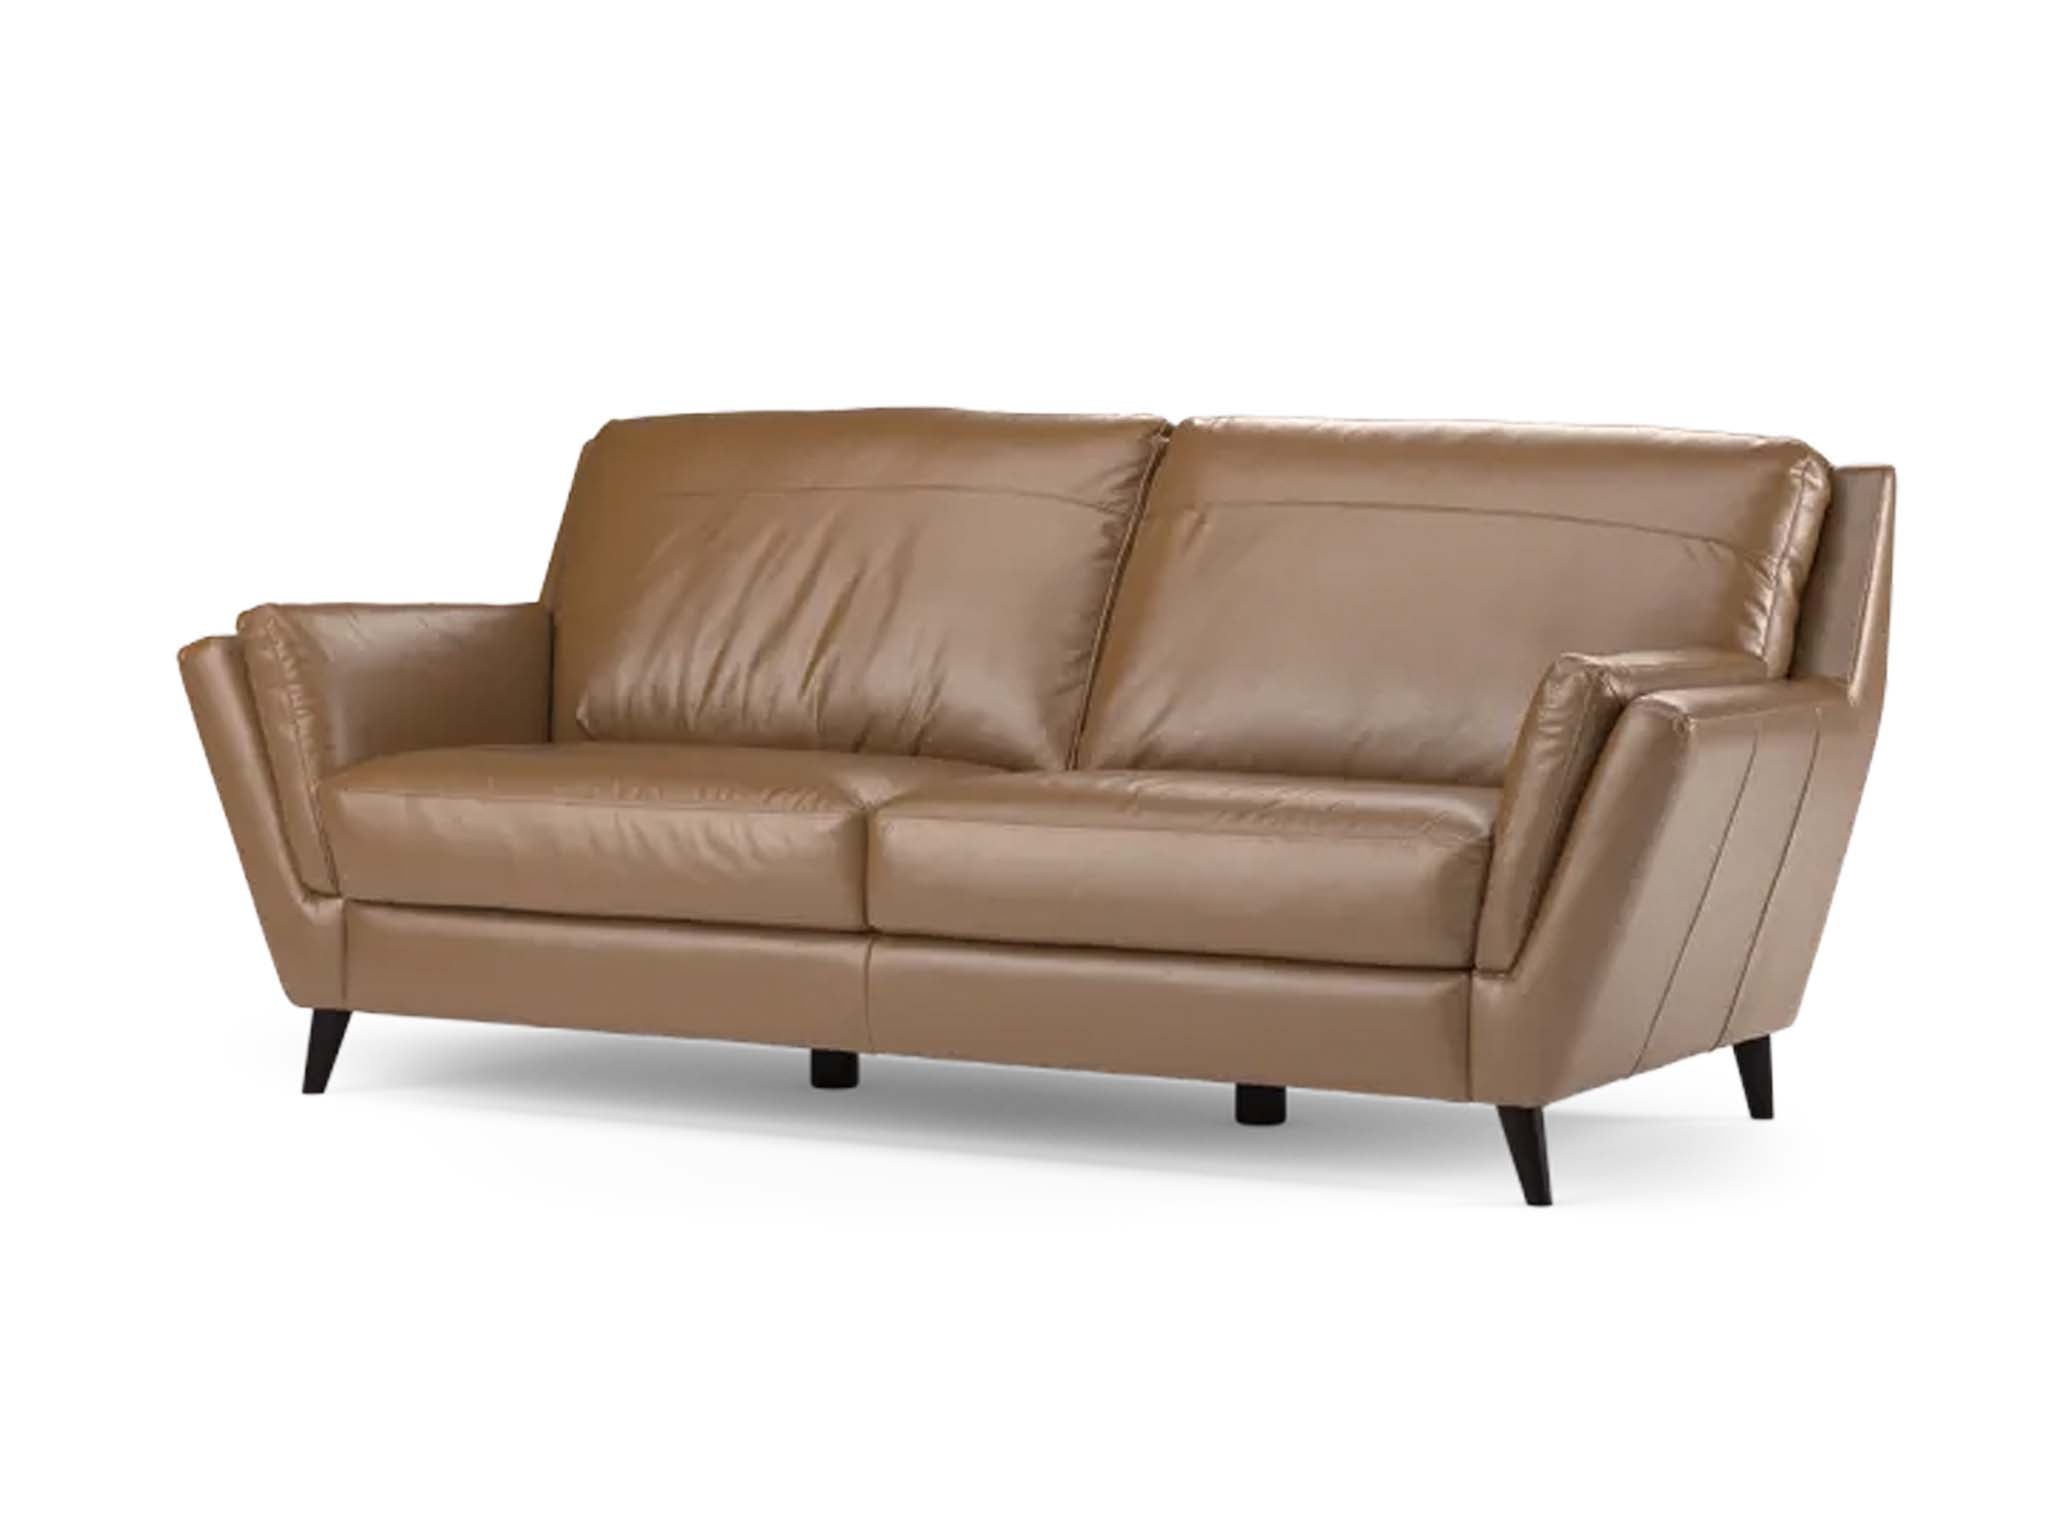 Sofology sofa .jpg